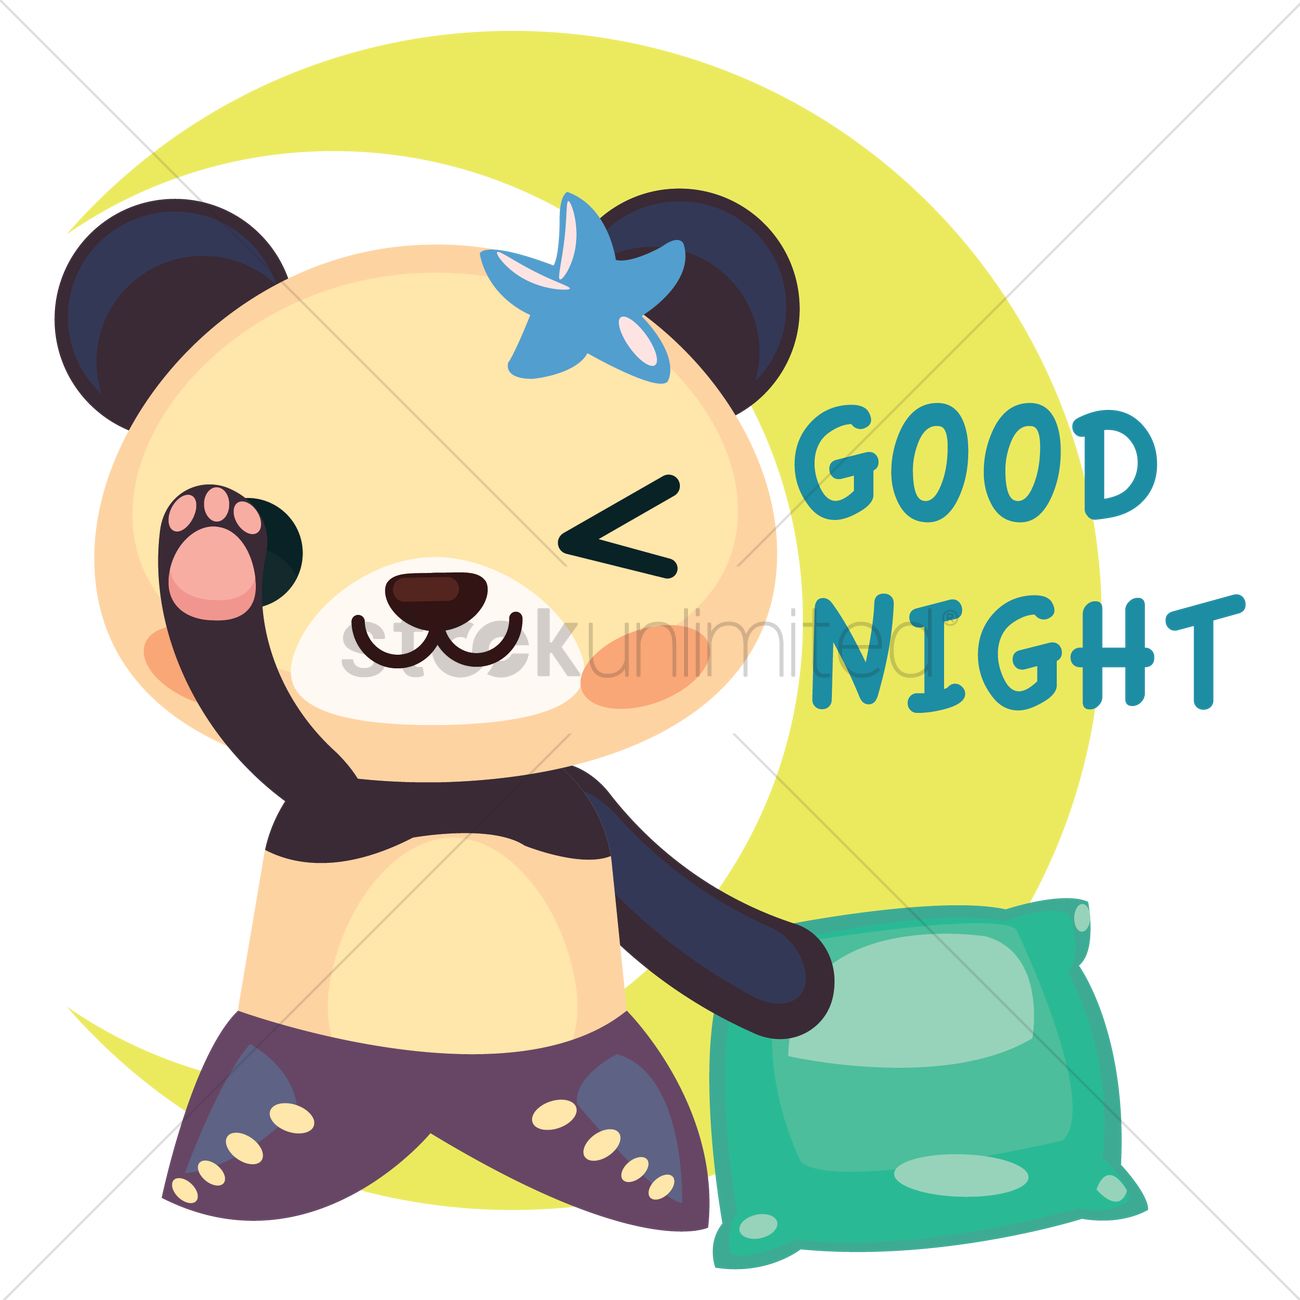 Free panda in mermaid costume saying goodnight vector graphic